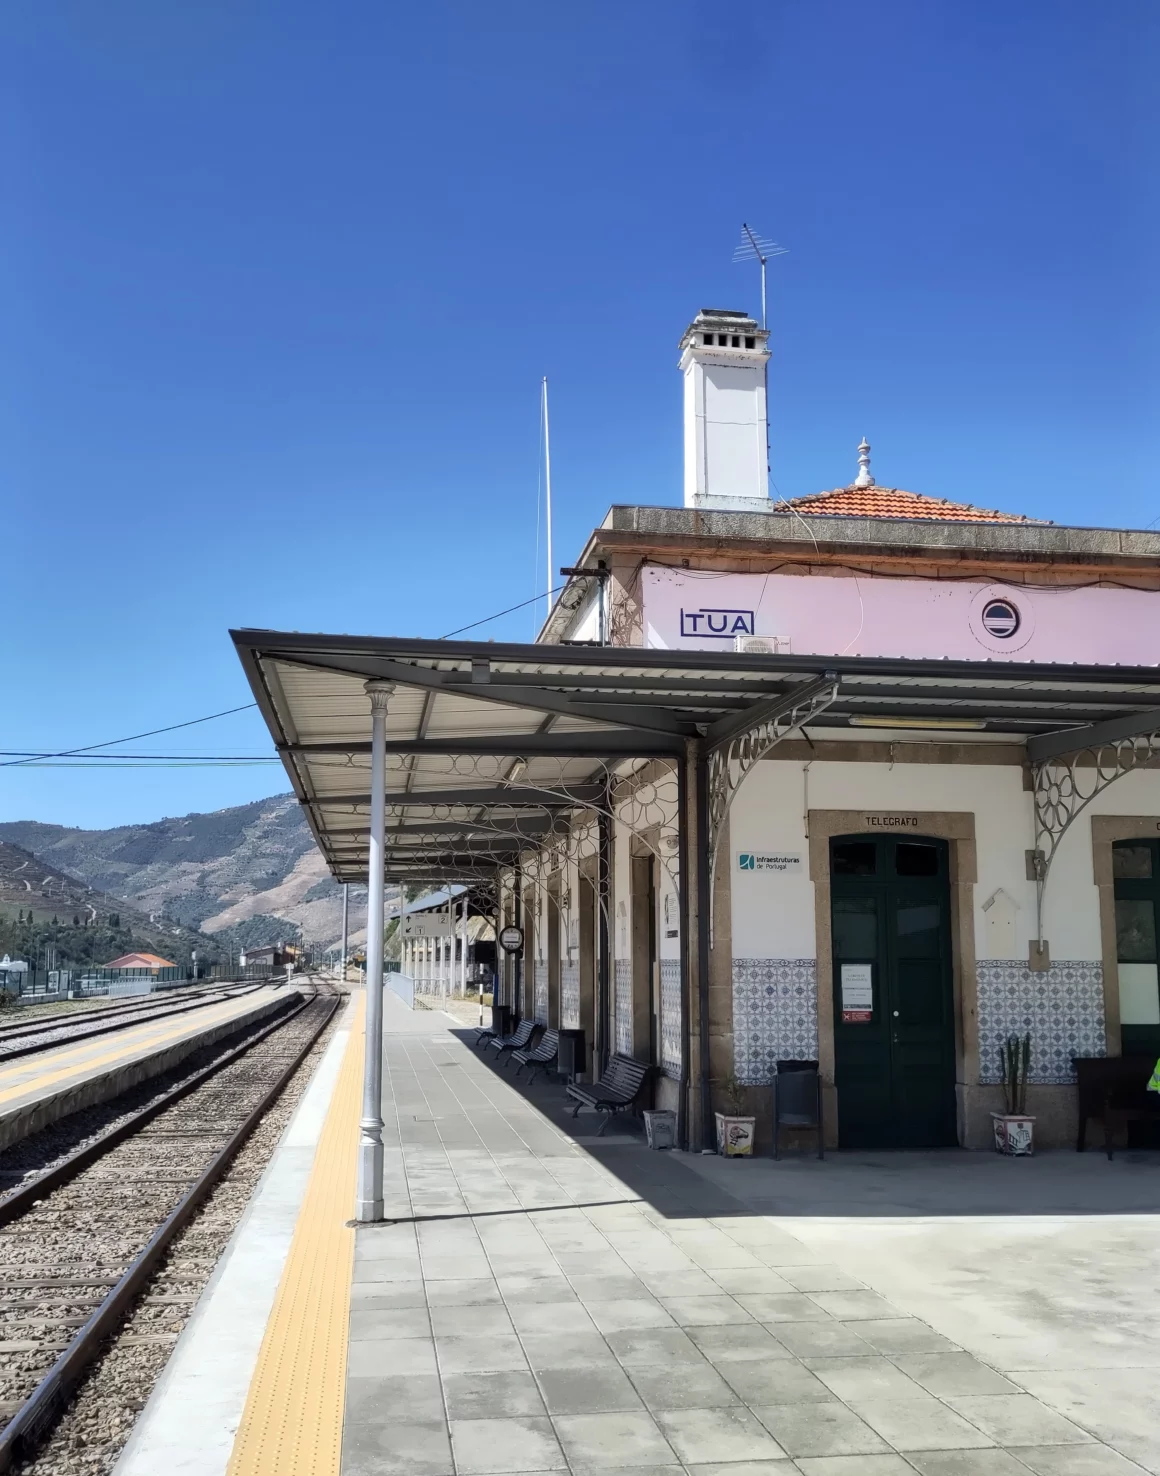 Blick auf leeren Bahnsteig und Bahnhofsgebäude in Tua